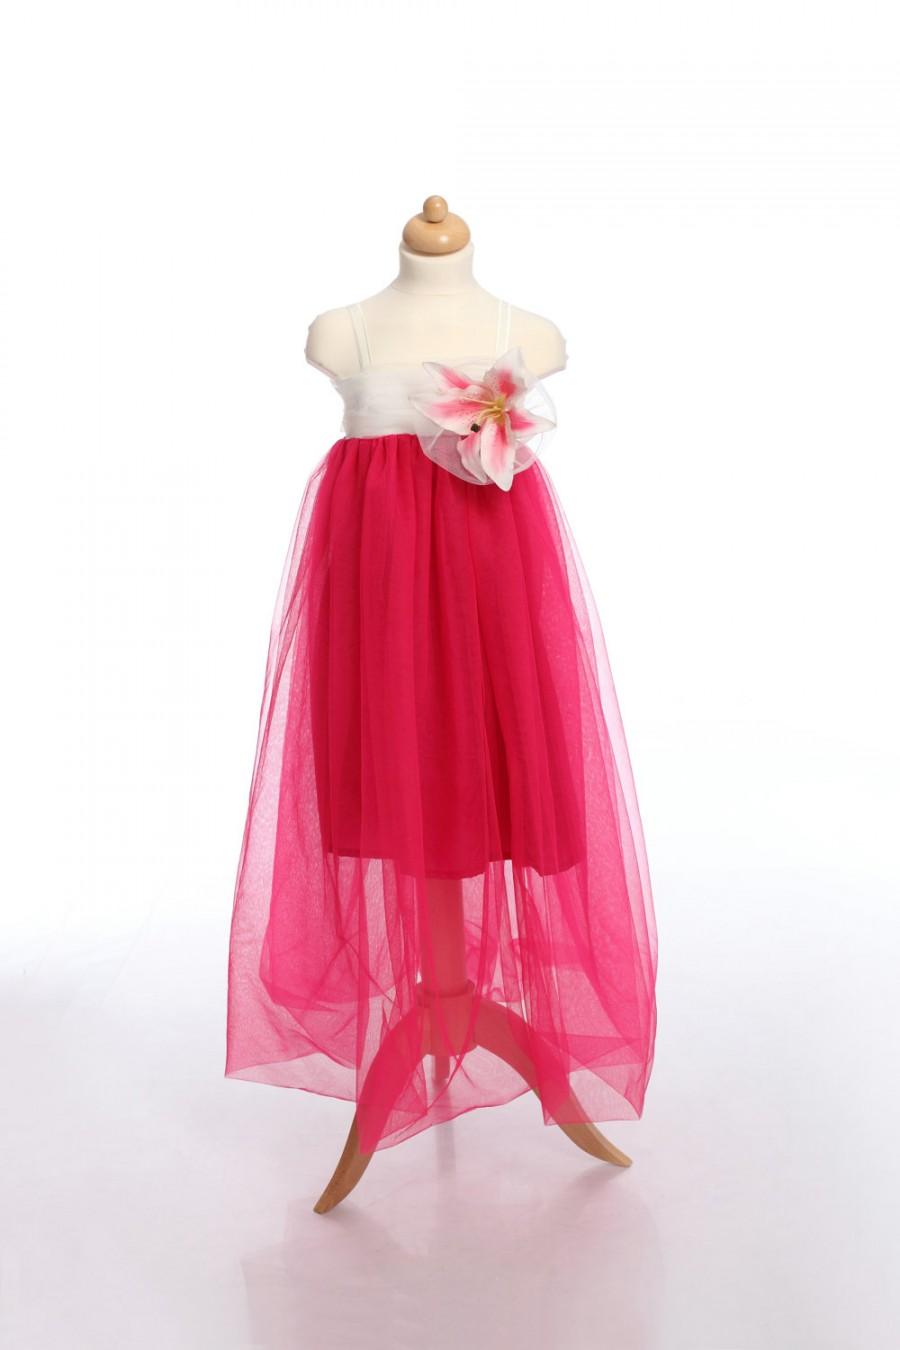 Wedding - Fuchsia Kid Dress, Flower Girl Dress, Tulle Toddler Dress, Girl Dress, Girl Gown, Birthday Dress, Fairy dress